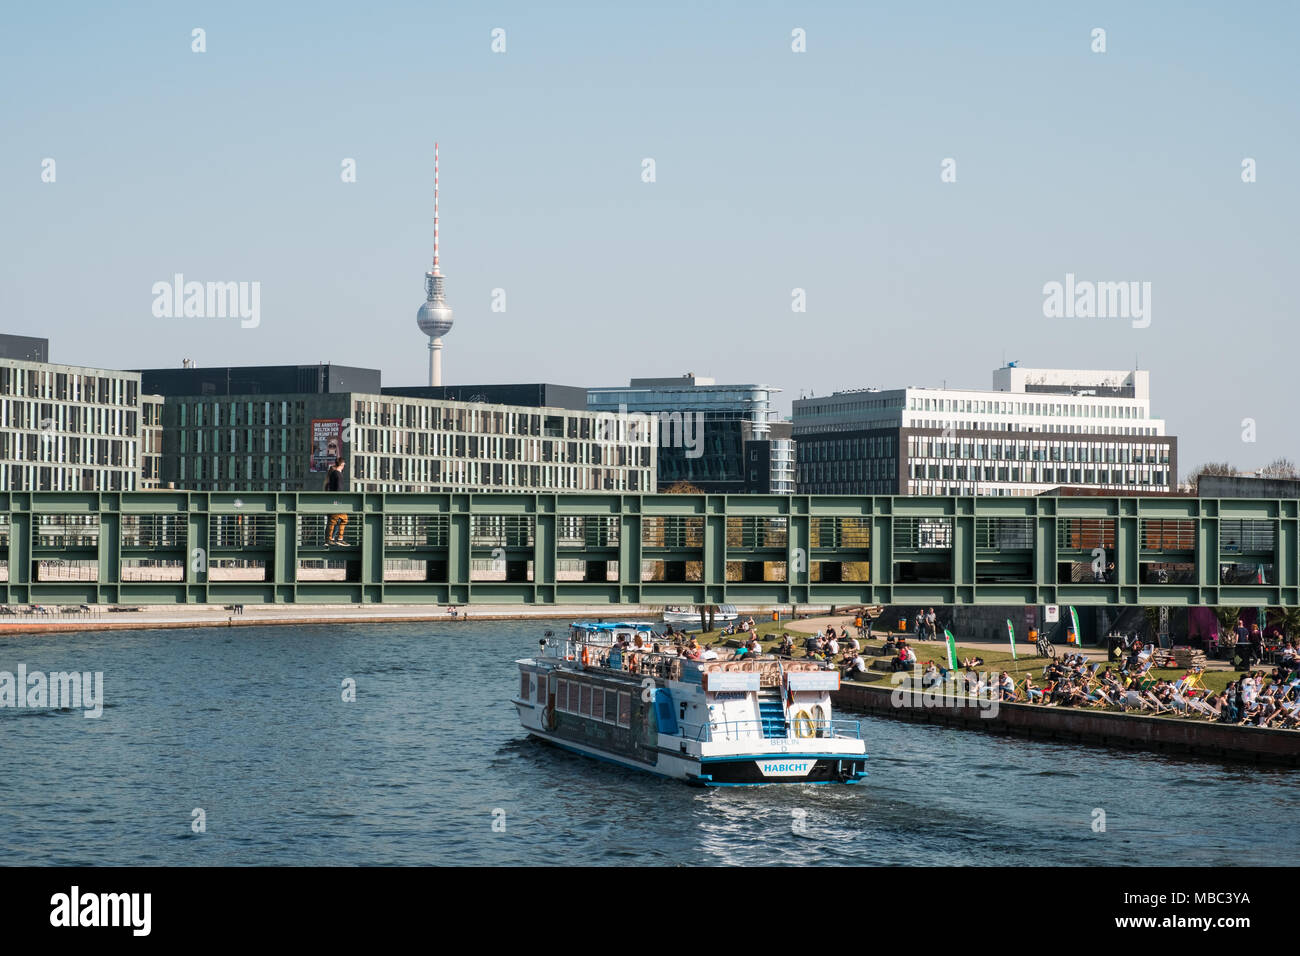 Berlin, Deutschland - April 2018: Berliner Stadtbild mit Schiff auf Spree, Leute sitzen auf Riverside und Fernsehturm im Hintergrund Stockfoto